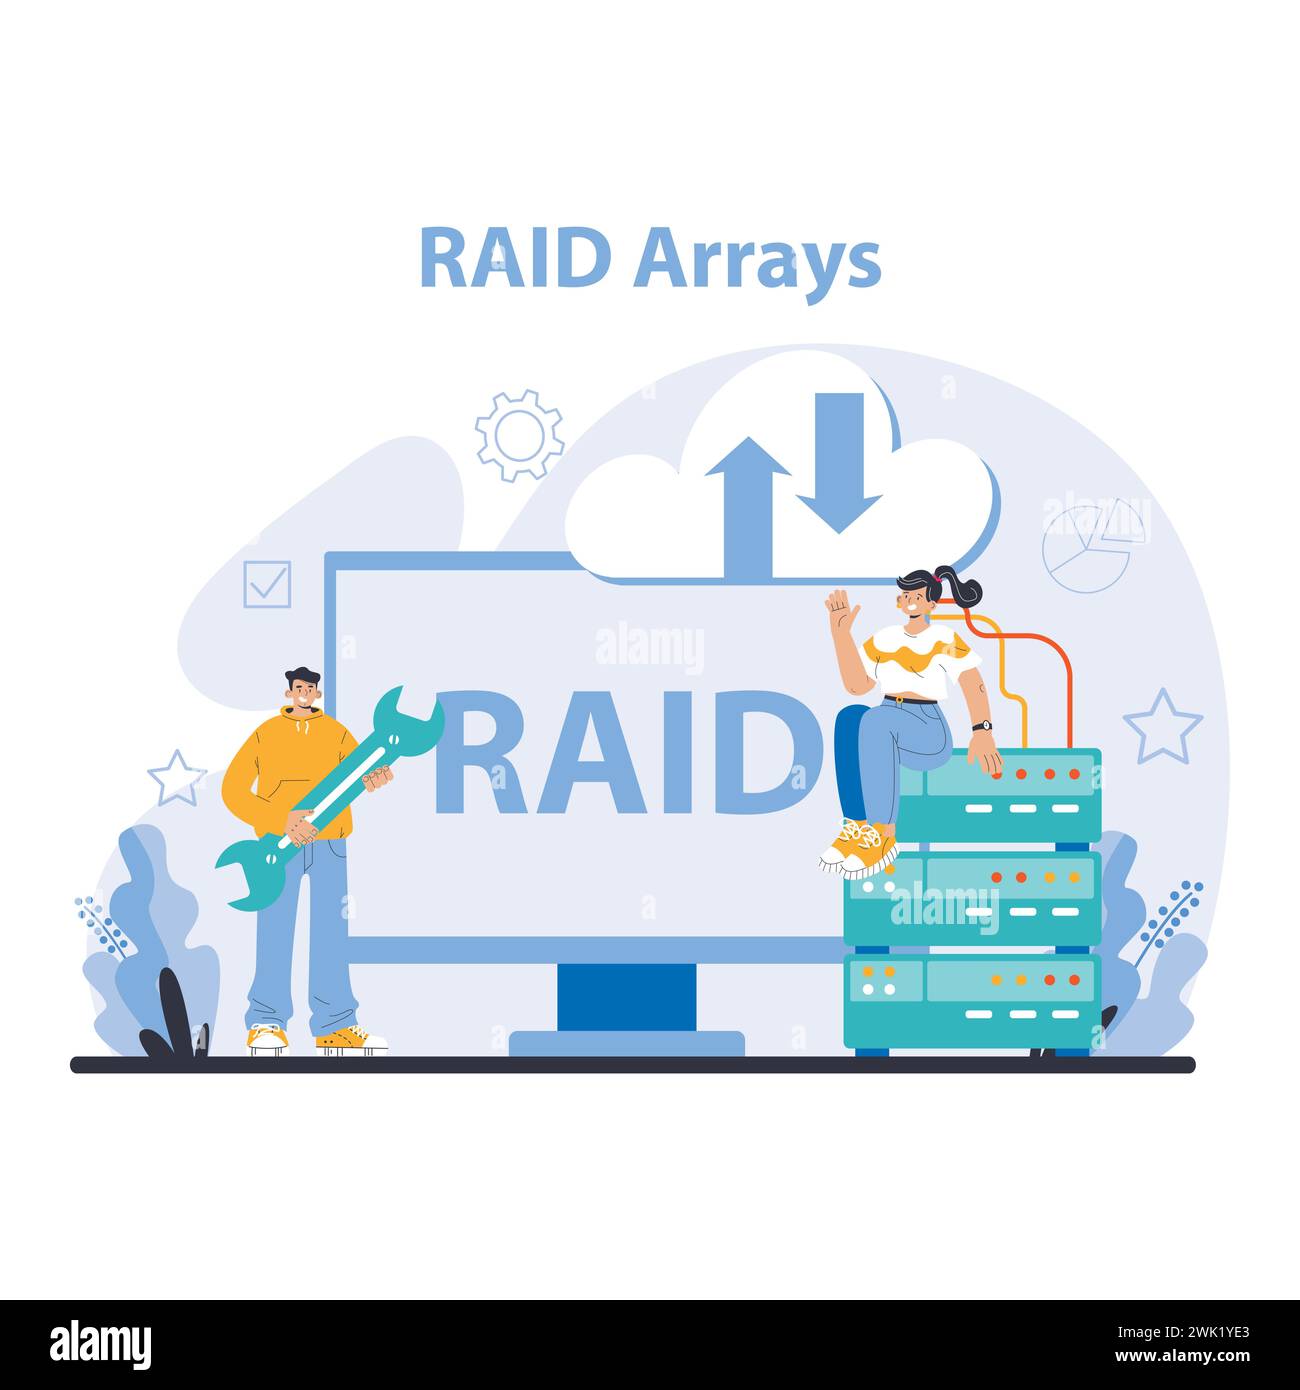 Concetto di array RAID. Illustrando solide soluzioni di ridondanza e ripristino dei dati. Garantire un accesso ininterrotto ai dati con la tecnologia RAID. Illustrazione vettoriale piatta. Illustrazione Vettoriale